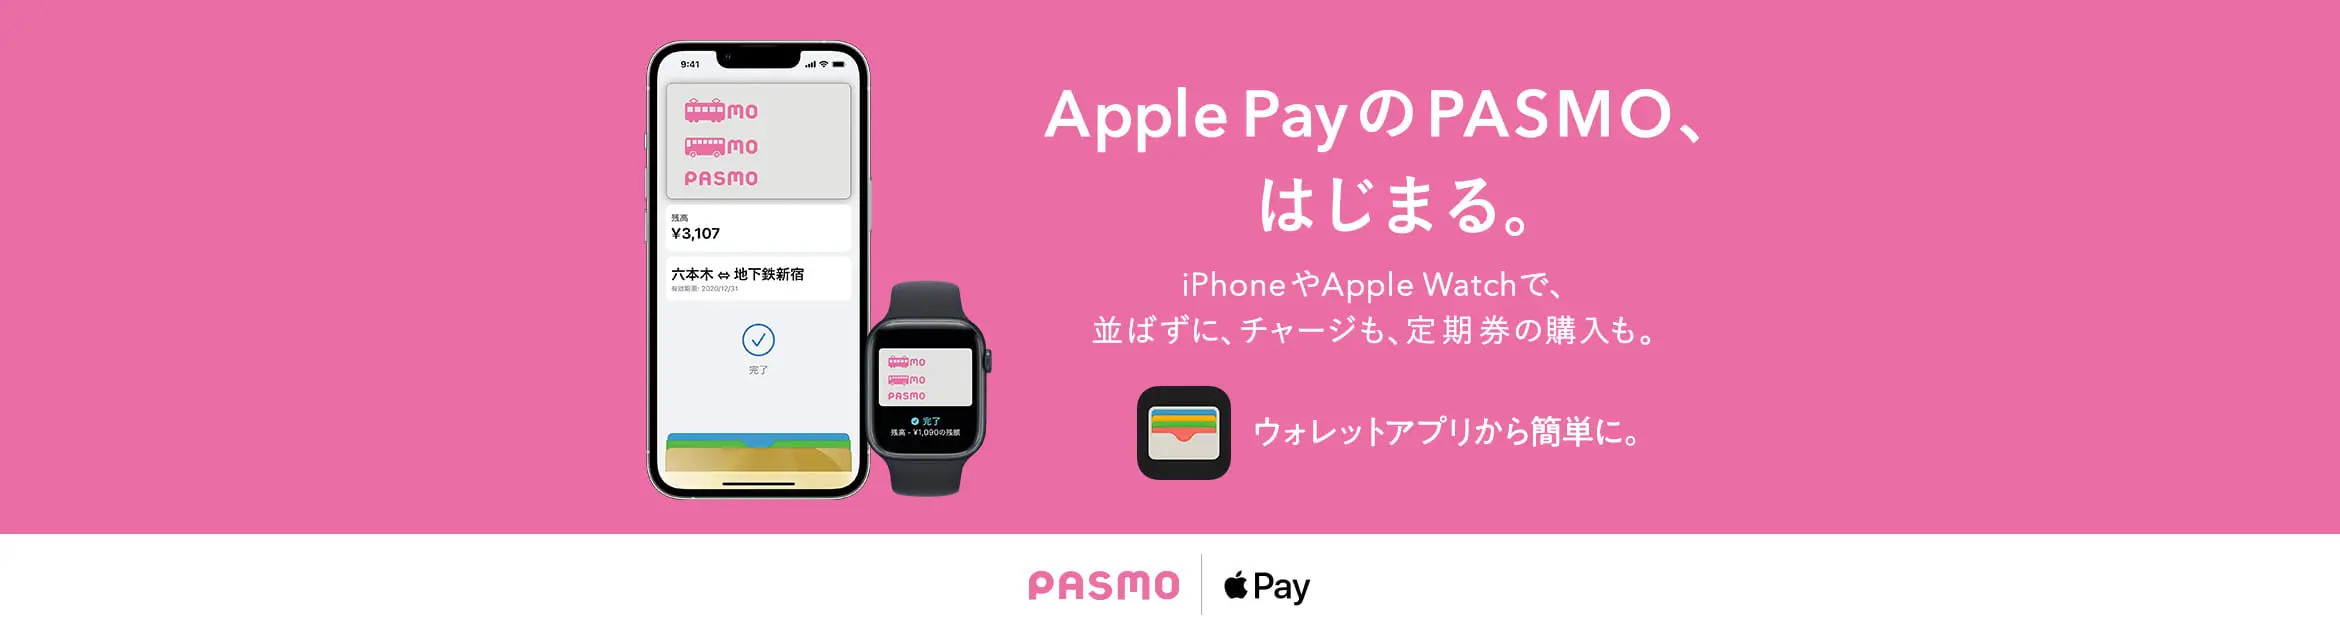 Apple PayのPASMO、はじまる。iPhoneやApple Watchで並ばずに、チャージも、定期券の購入も。